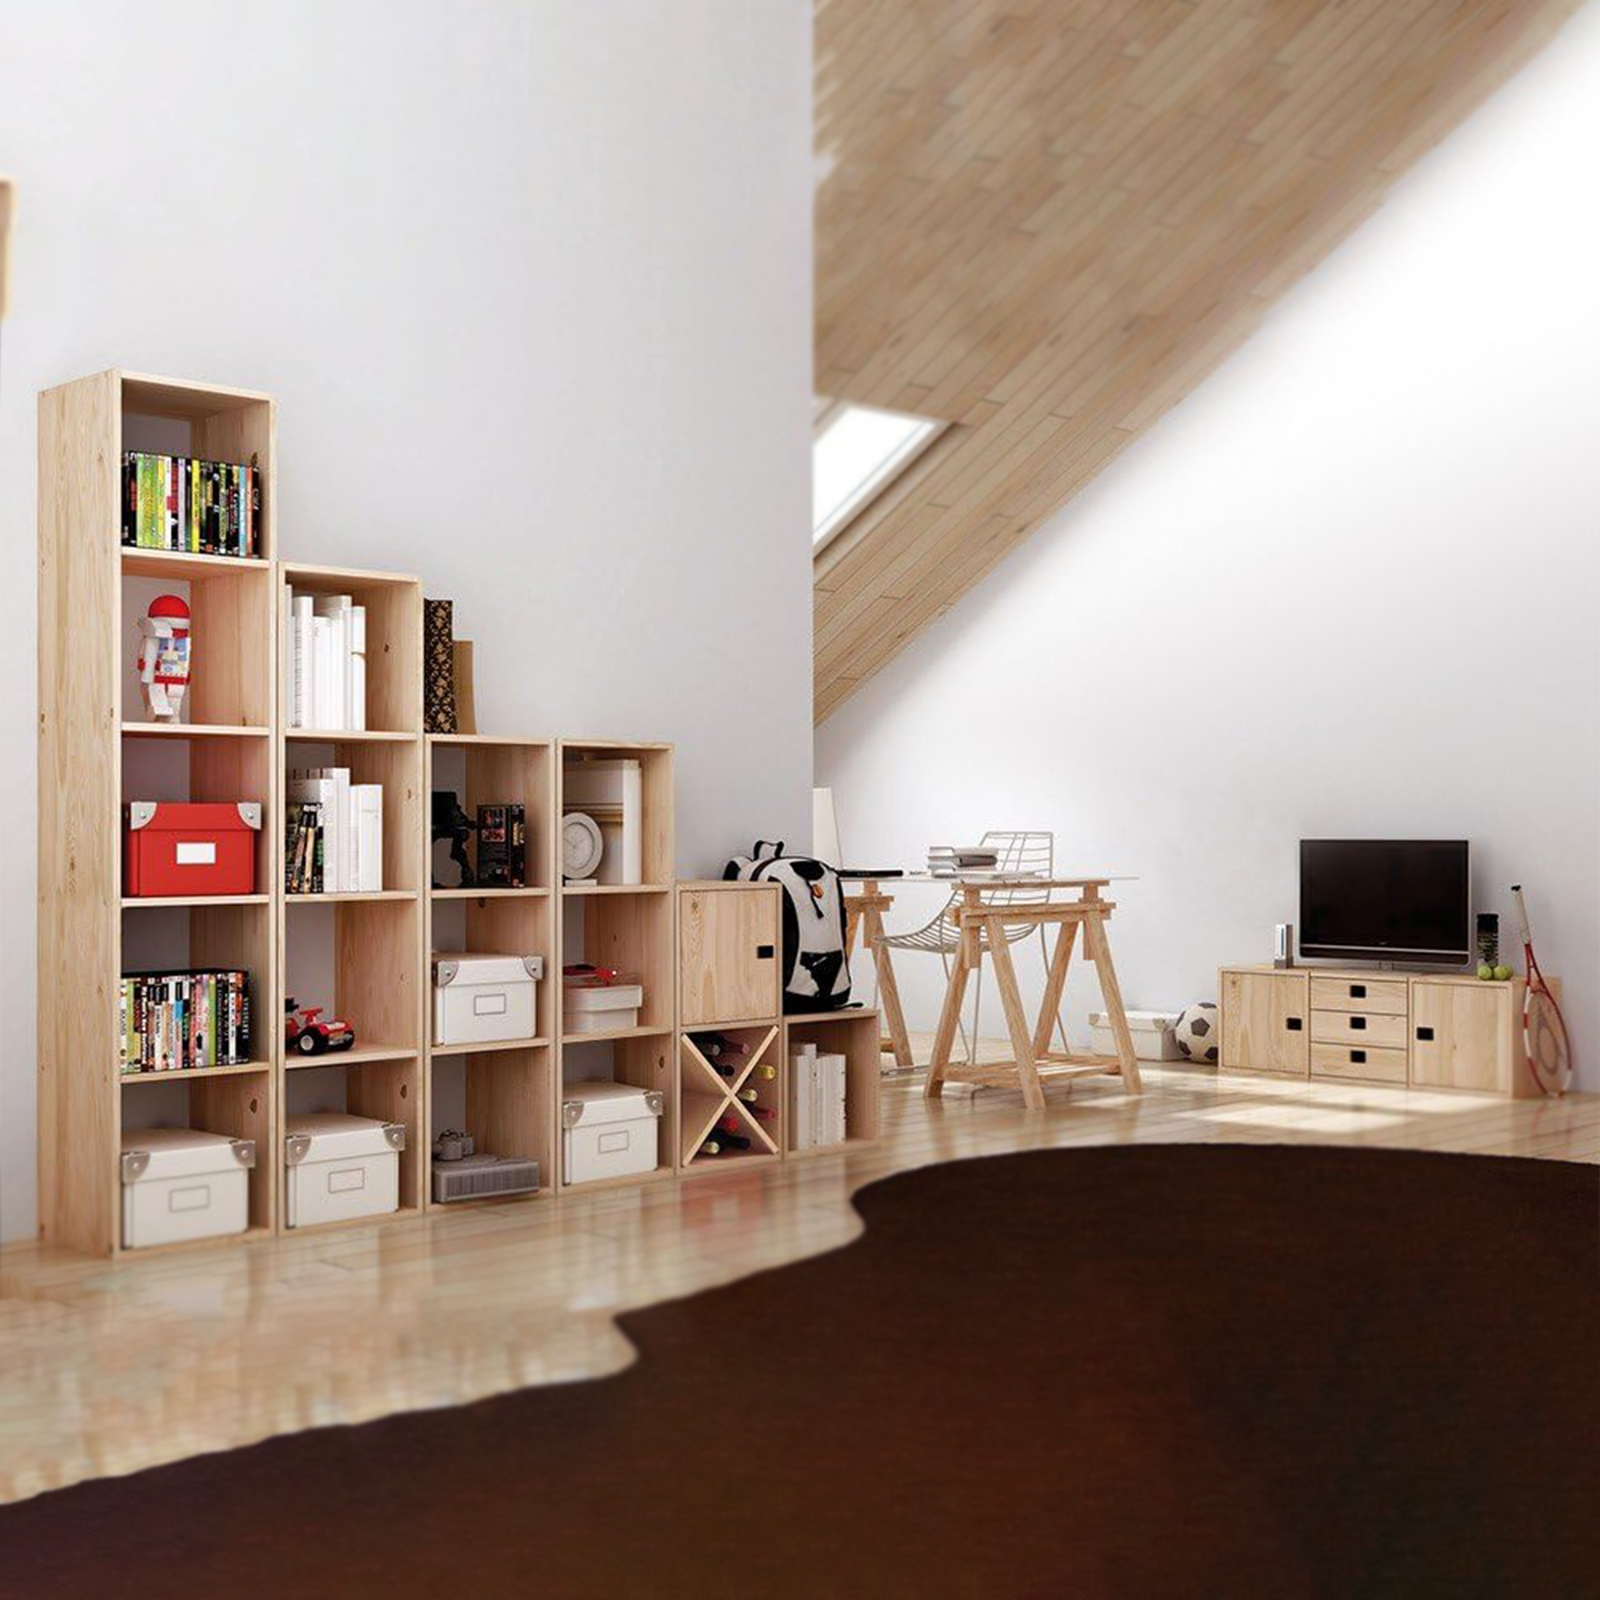 Libreria componibile in legno Cubo scaffale modulare da muro con vani a giorno